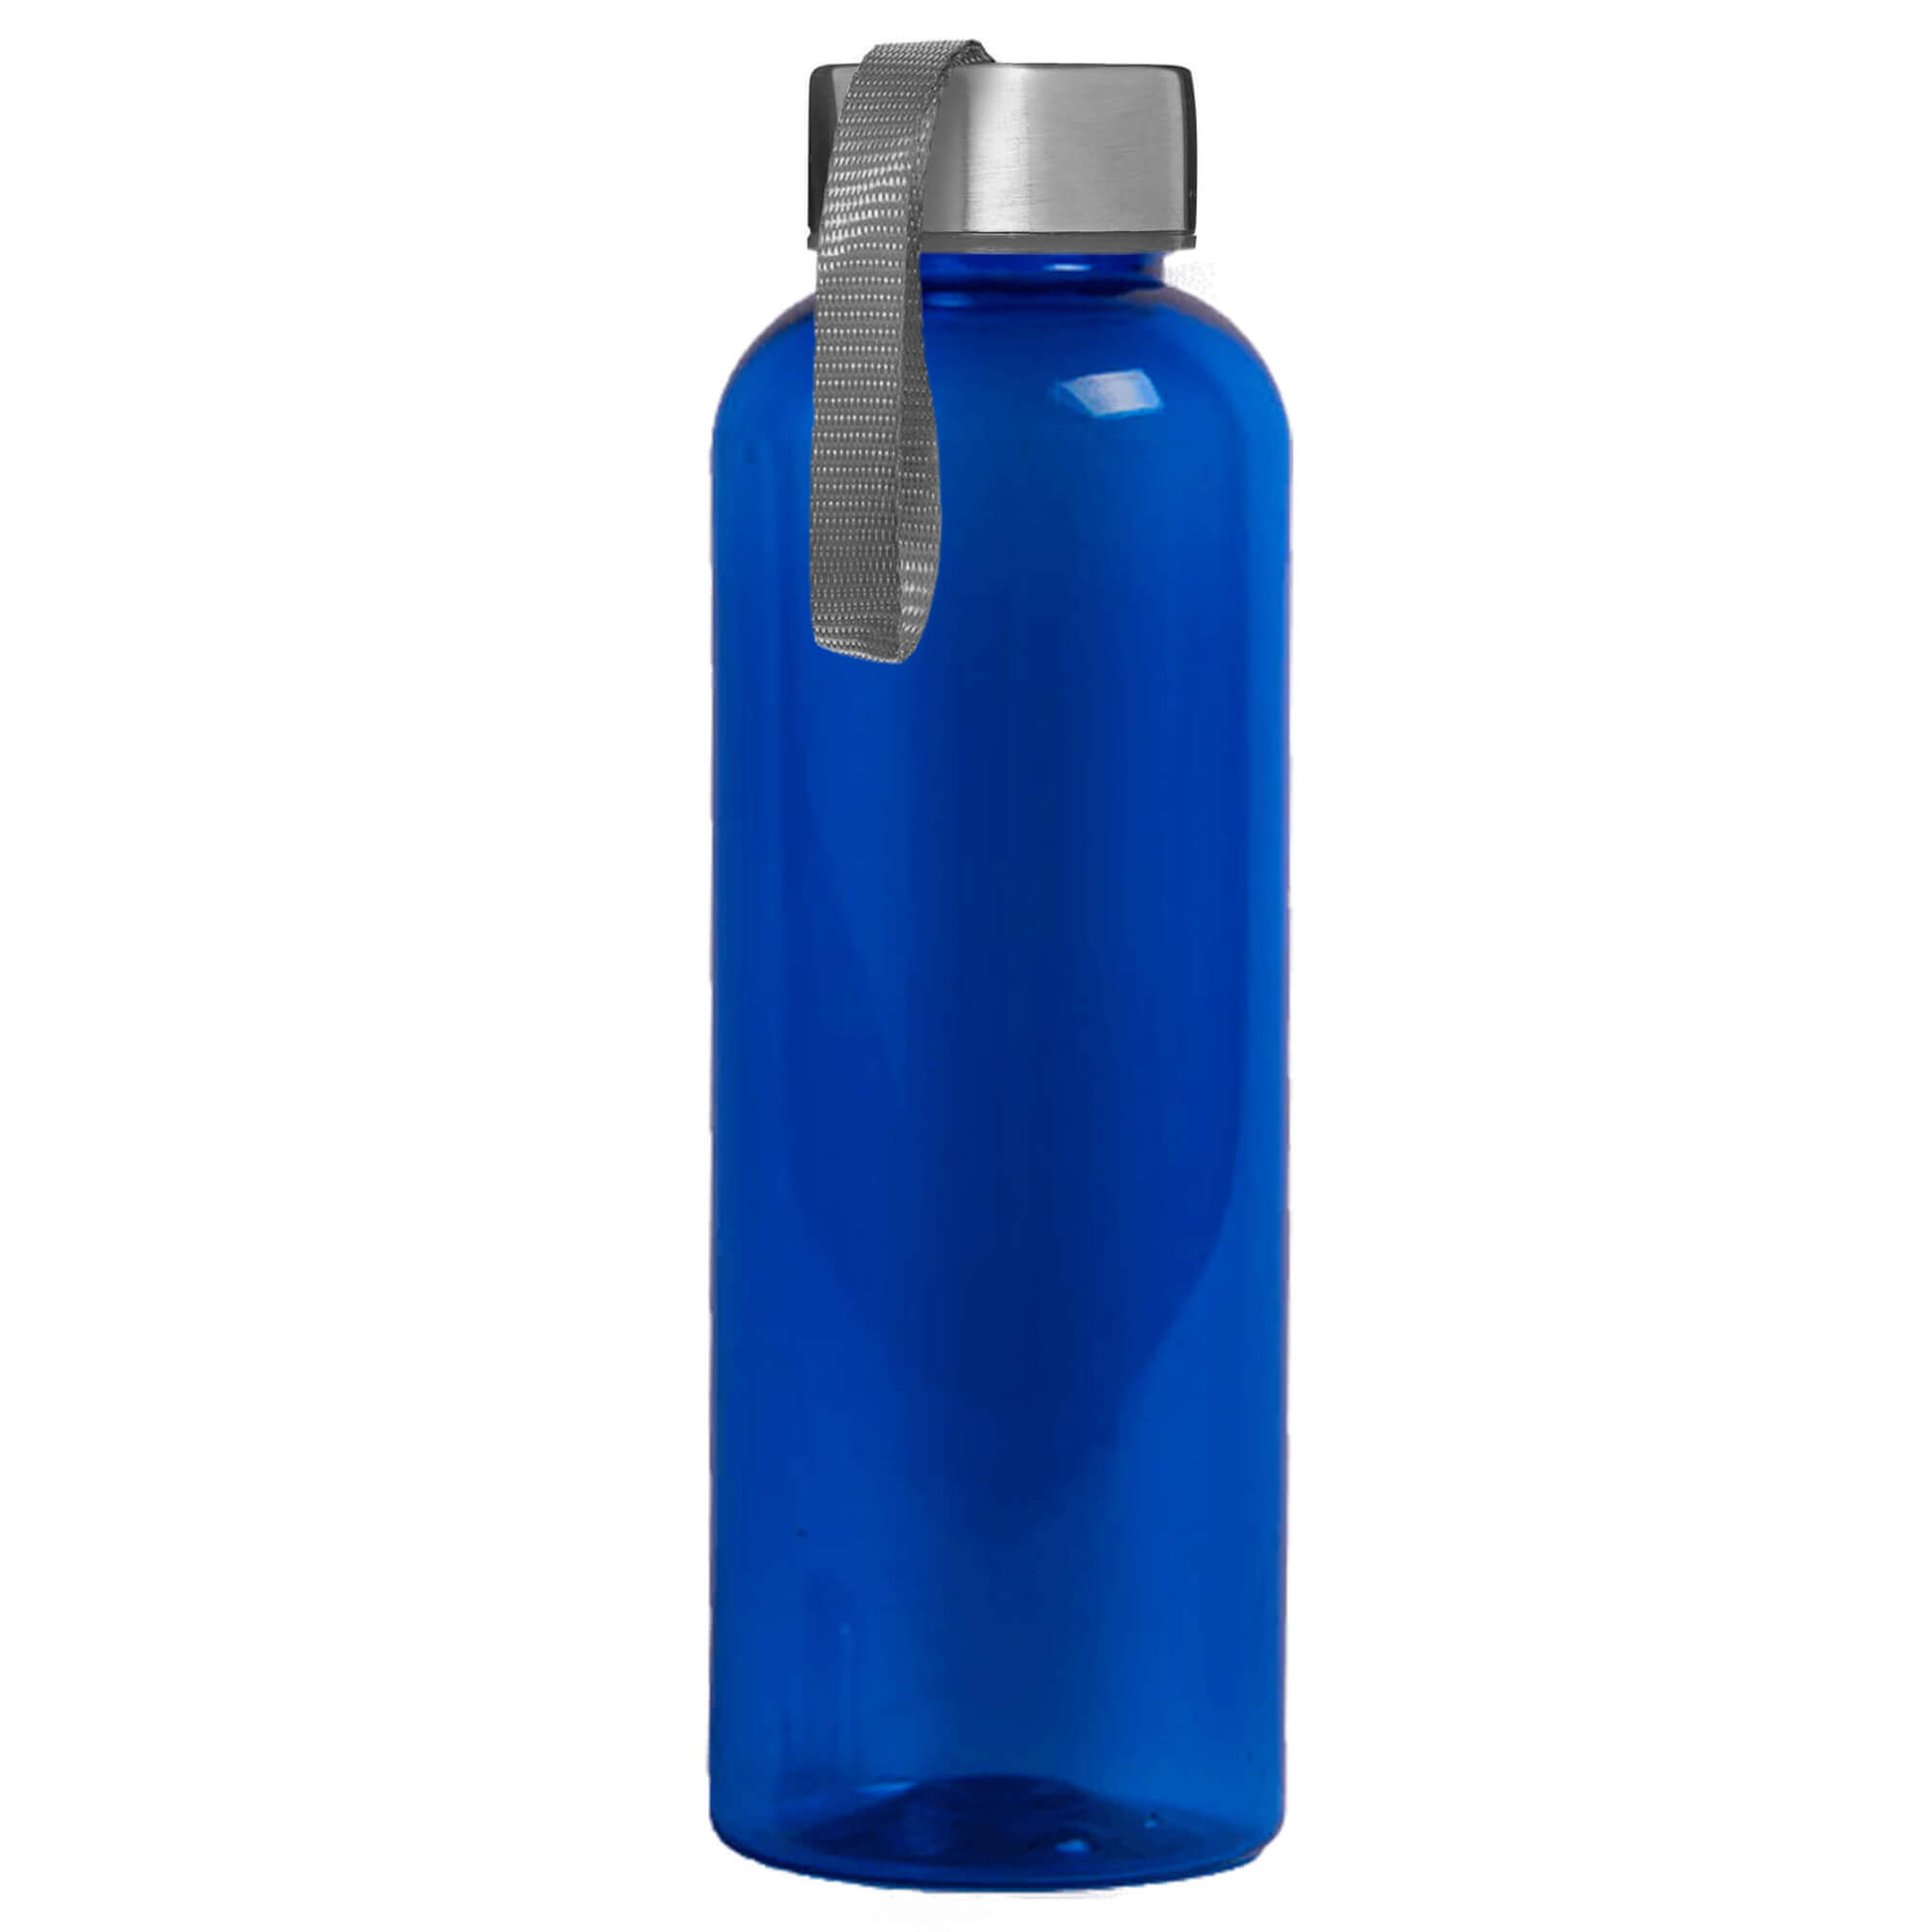 Бутылка для воды VERONA BLUE 550мл. Синяя с серым 6101.23